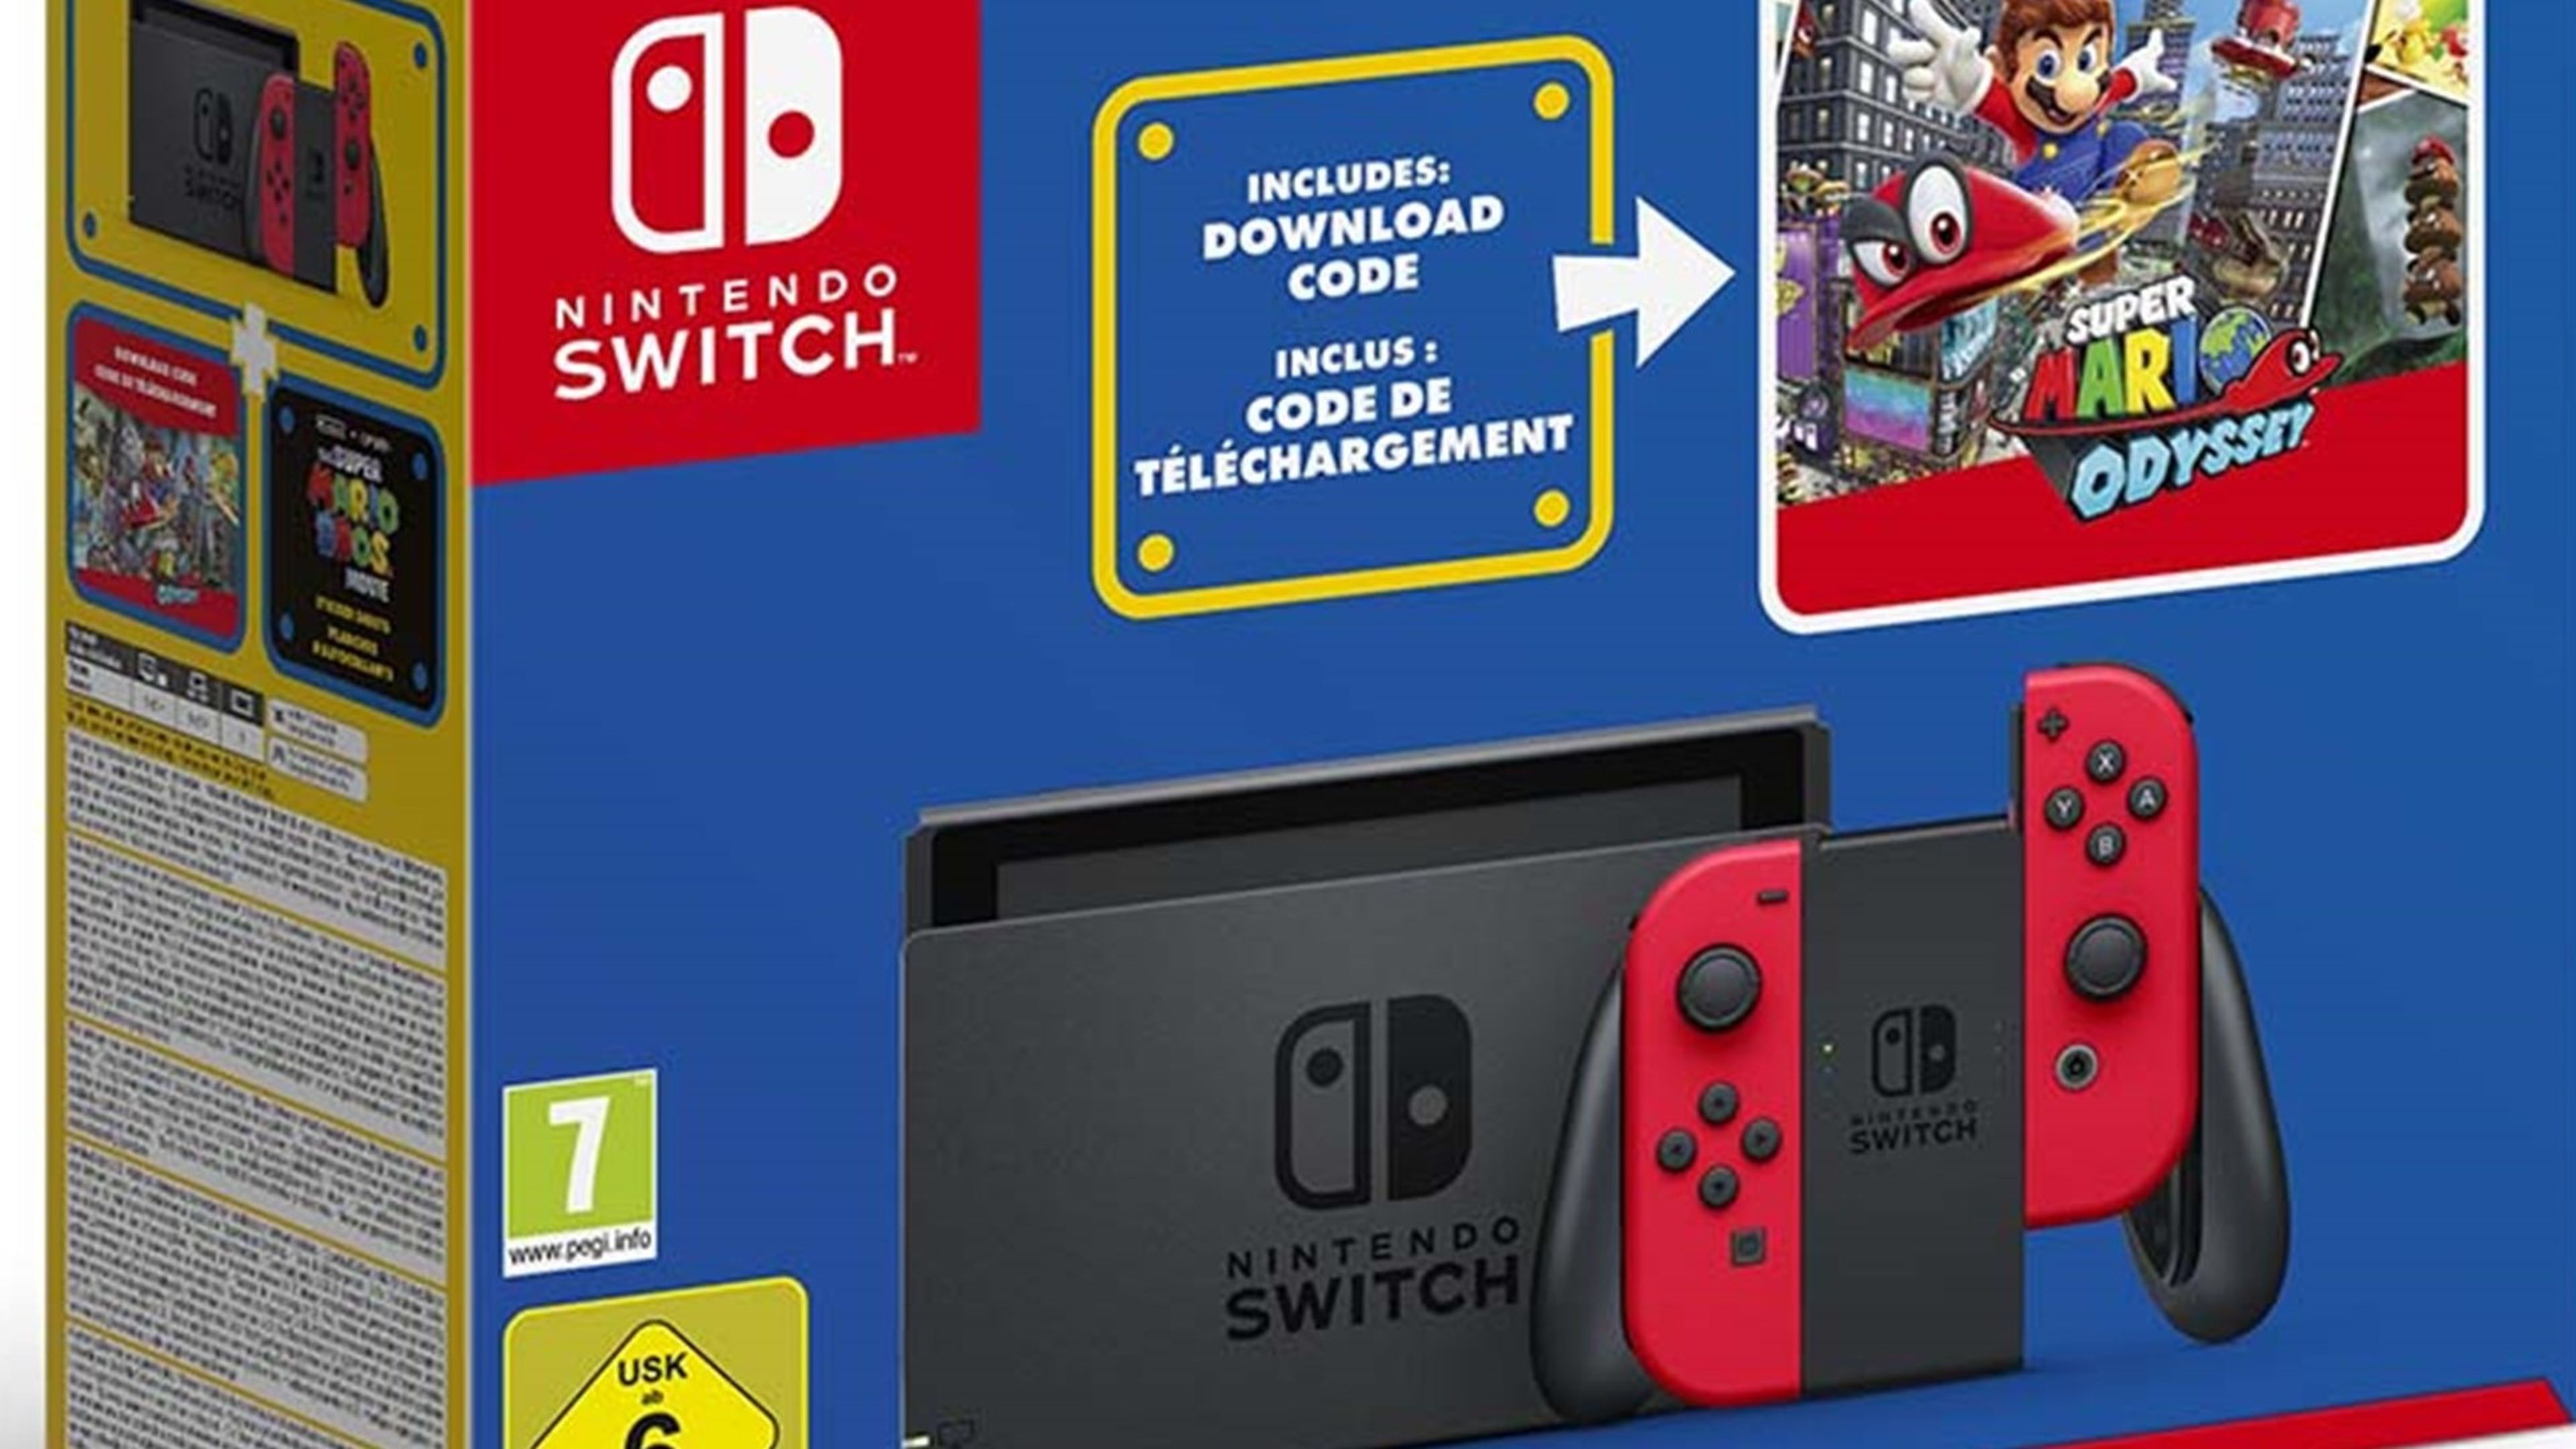 Pack de Nintendo Switch por el Mar10 Day